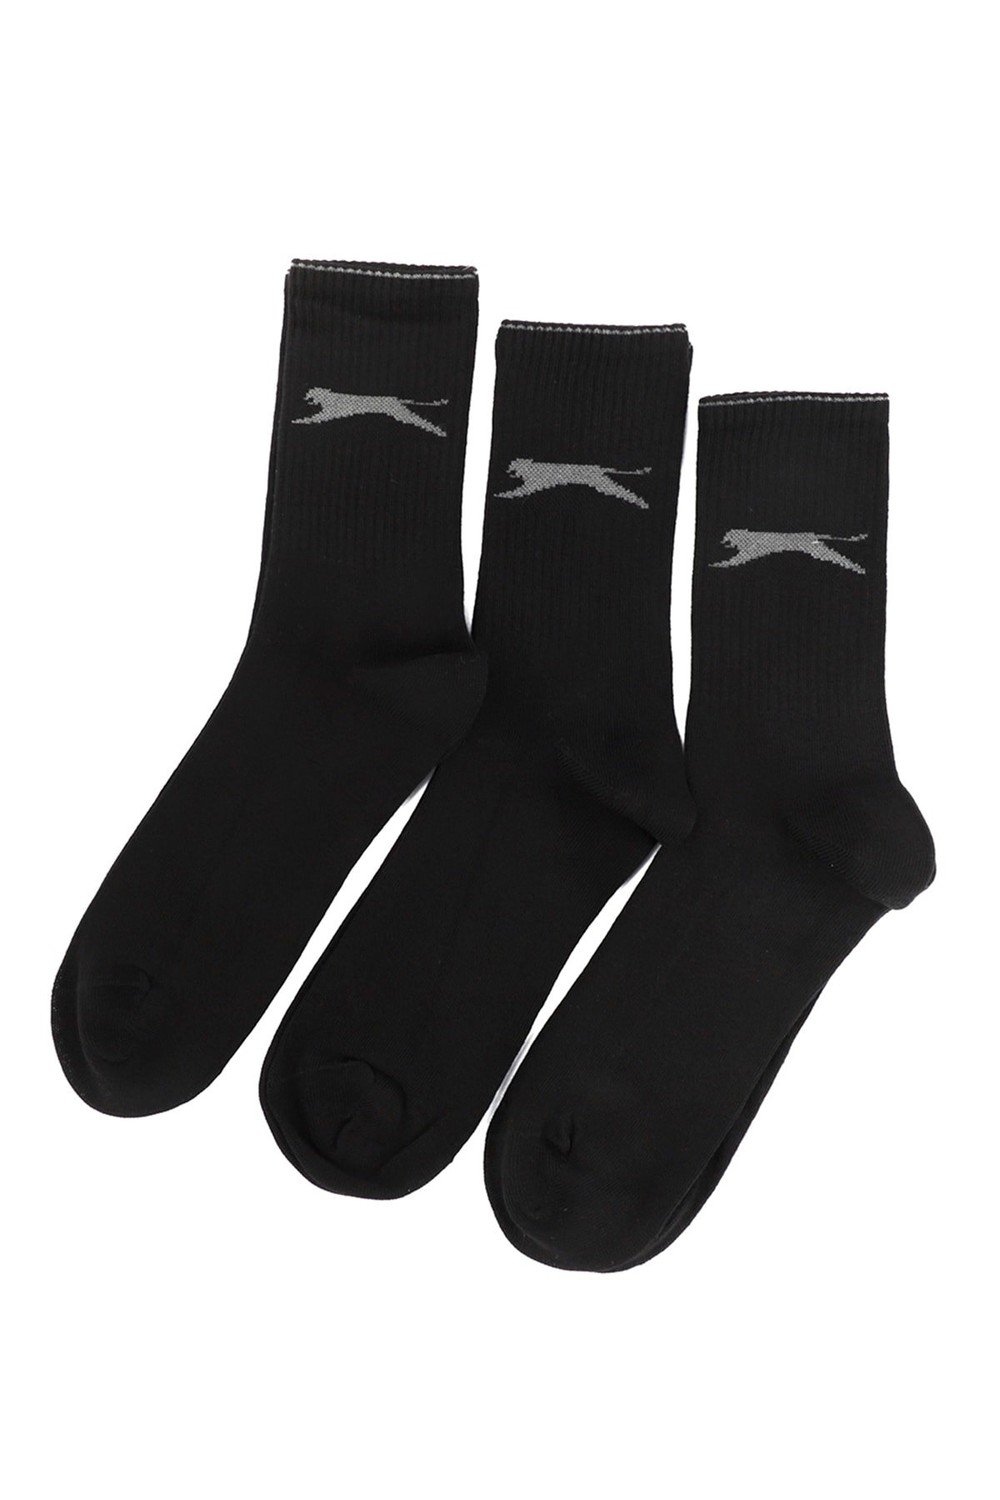 Slazenger Socks - Black - 4-pack